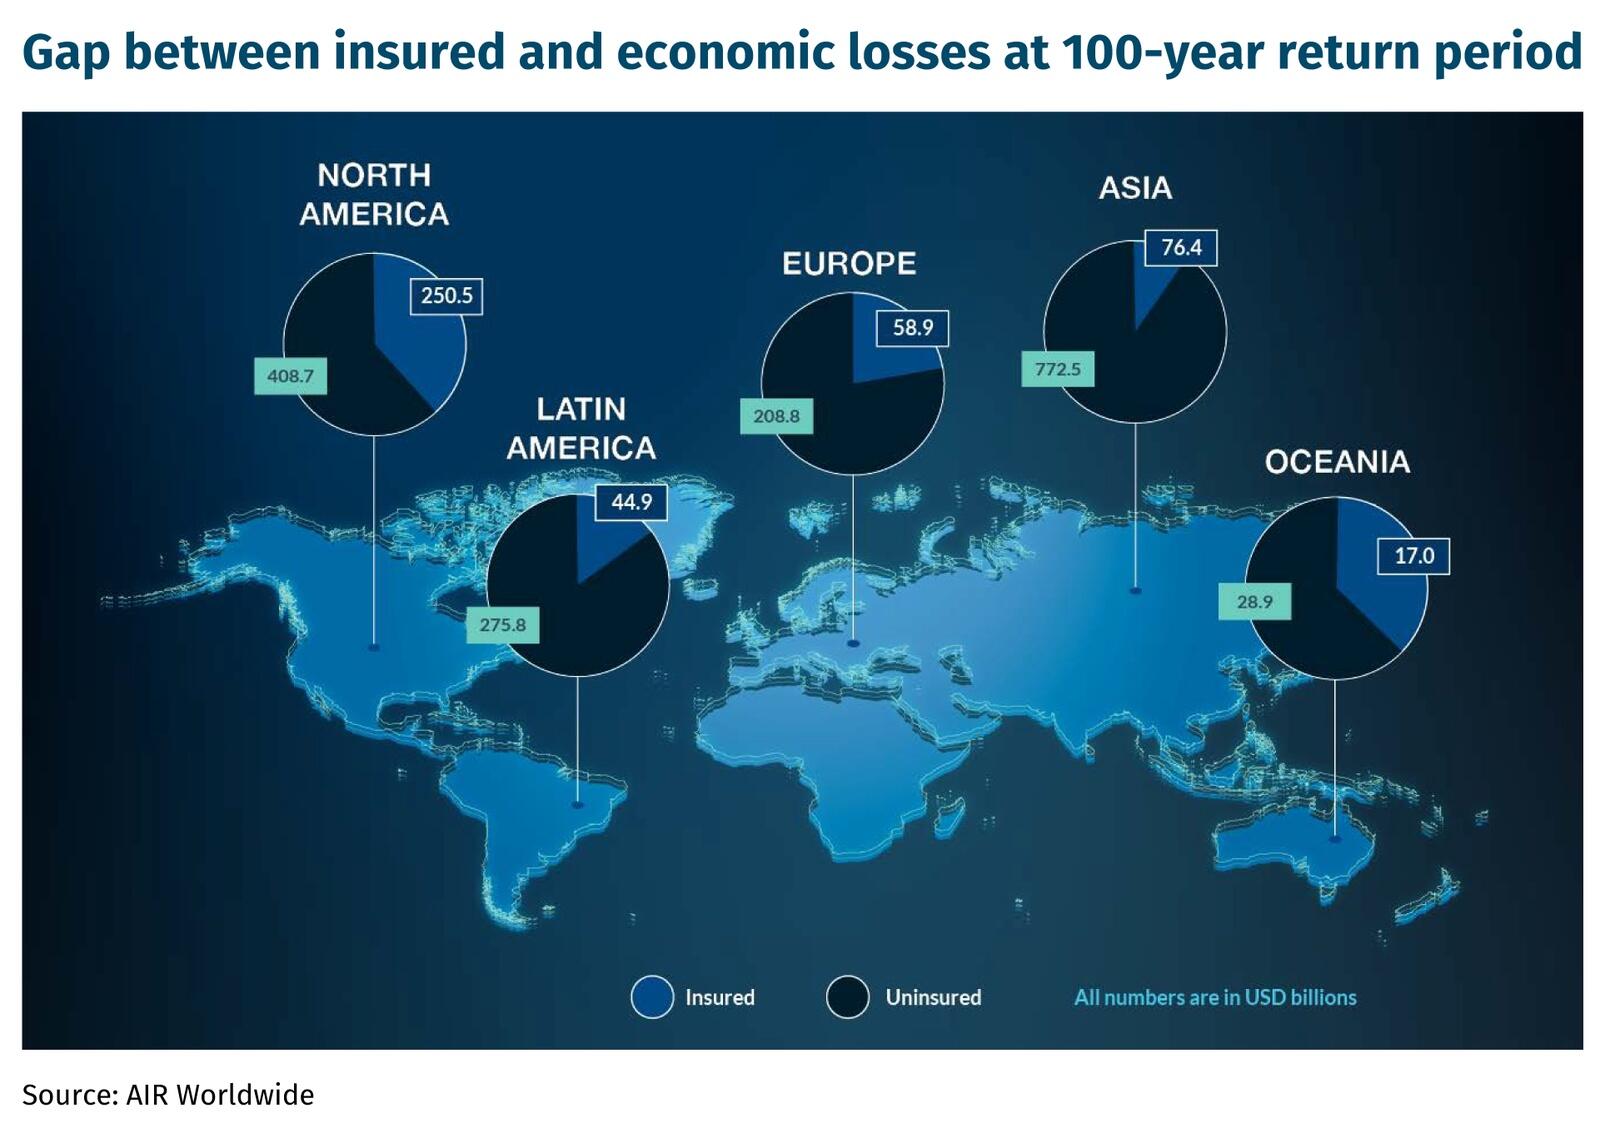 Gap between insured and economic losses at 100-year return period